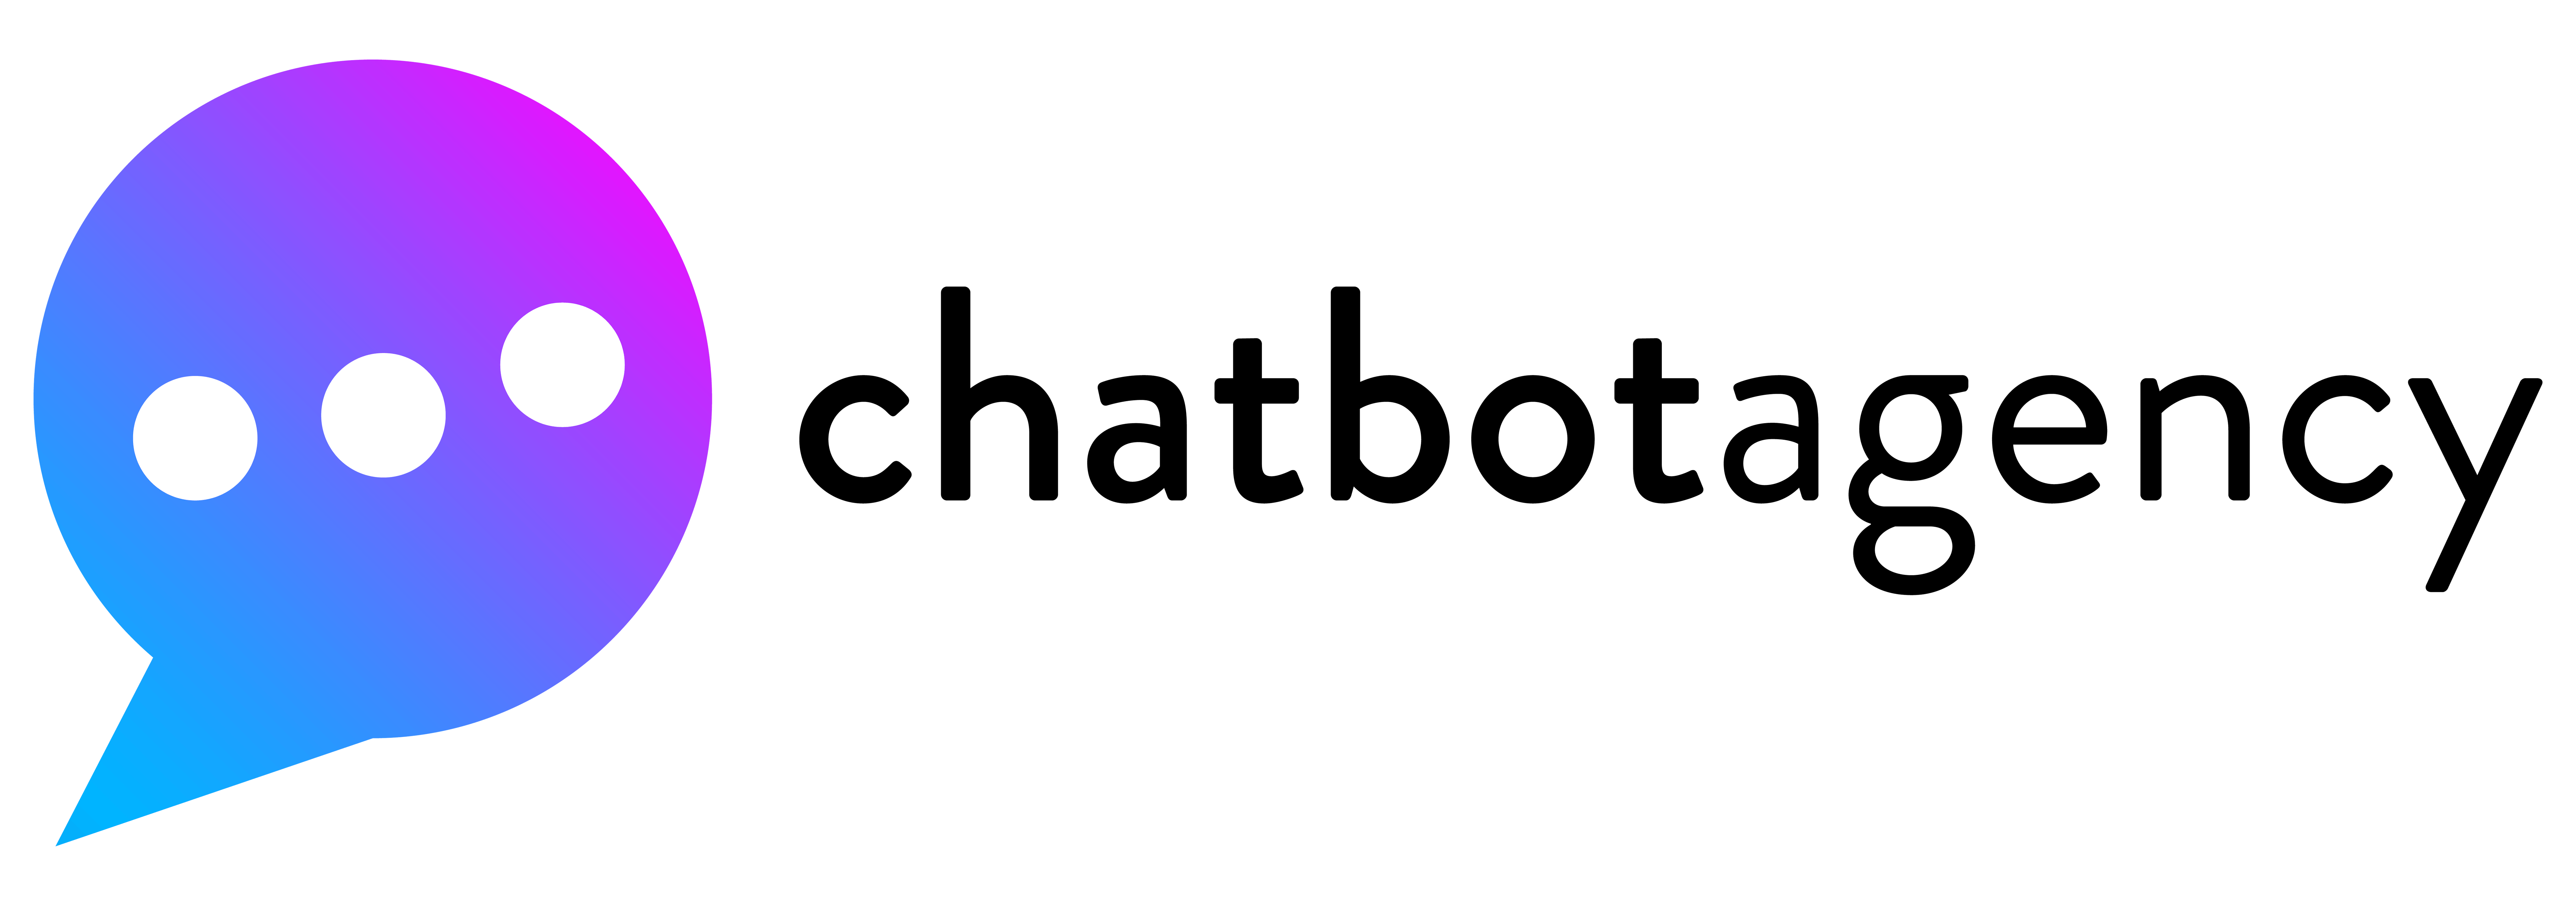 Services| Social Media Management | Chatbot Agency | Brisbane